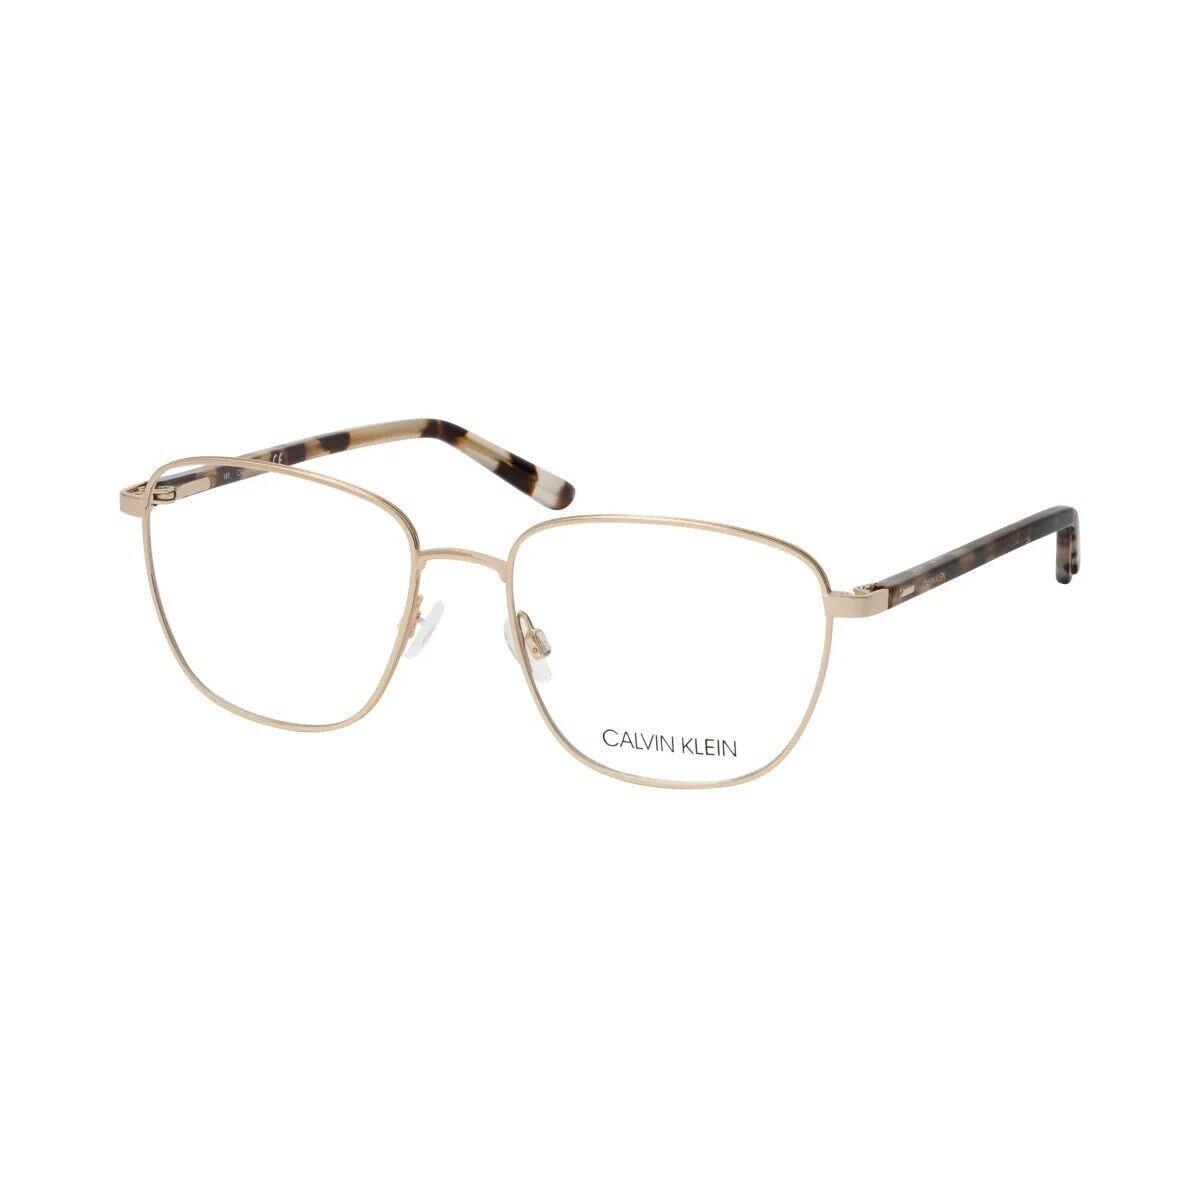 Calvin KLEIN-CK21300 716 52mm Square Eyeglasses Light Gold